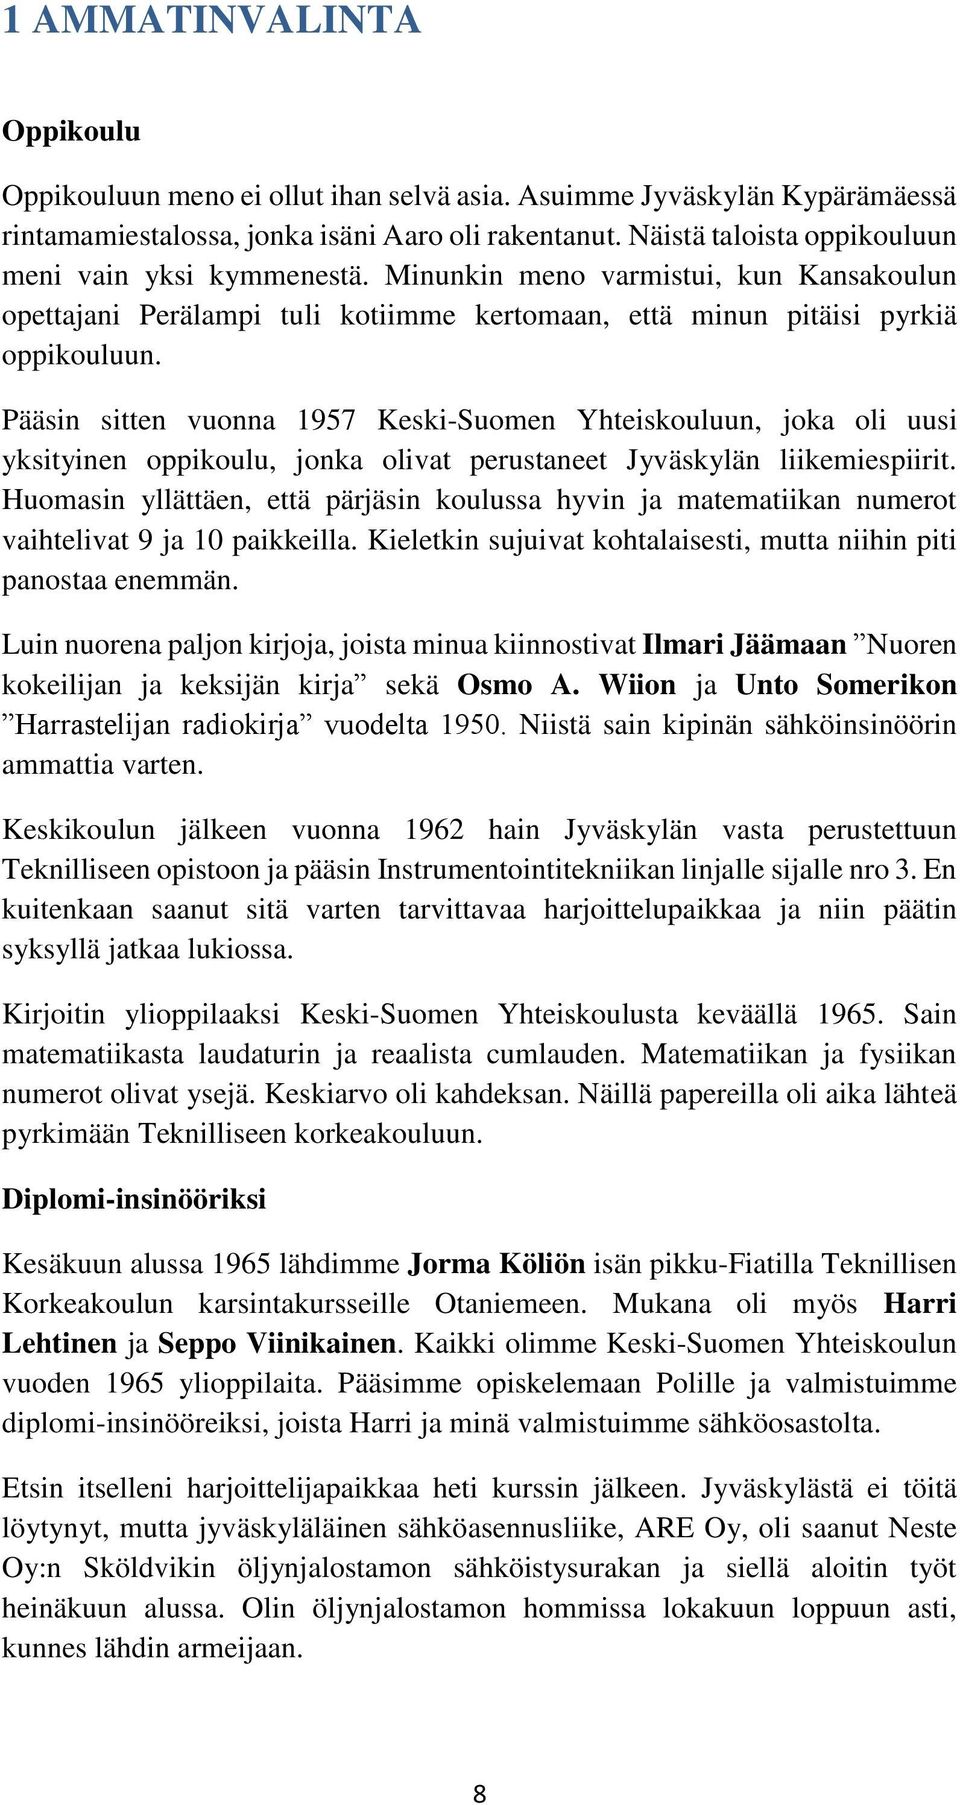 Pääsin sitten vuonna 1957 Keski-Suomen Yhteiskouluun, joka oli uusi yksityinen oppikoulu, jonka olivat perustaneet Jyväskylän liikemiespiirit.